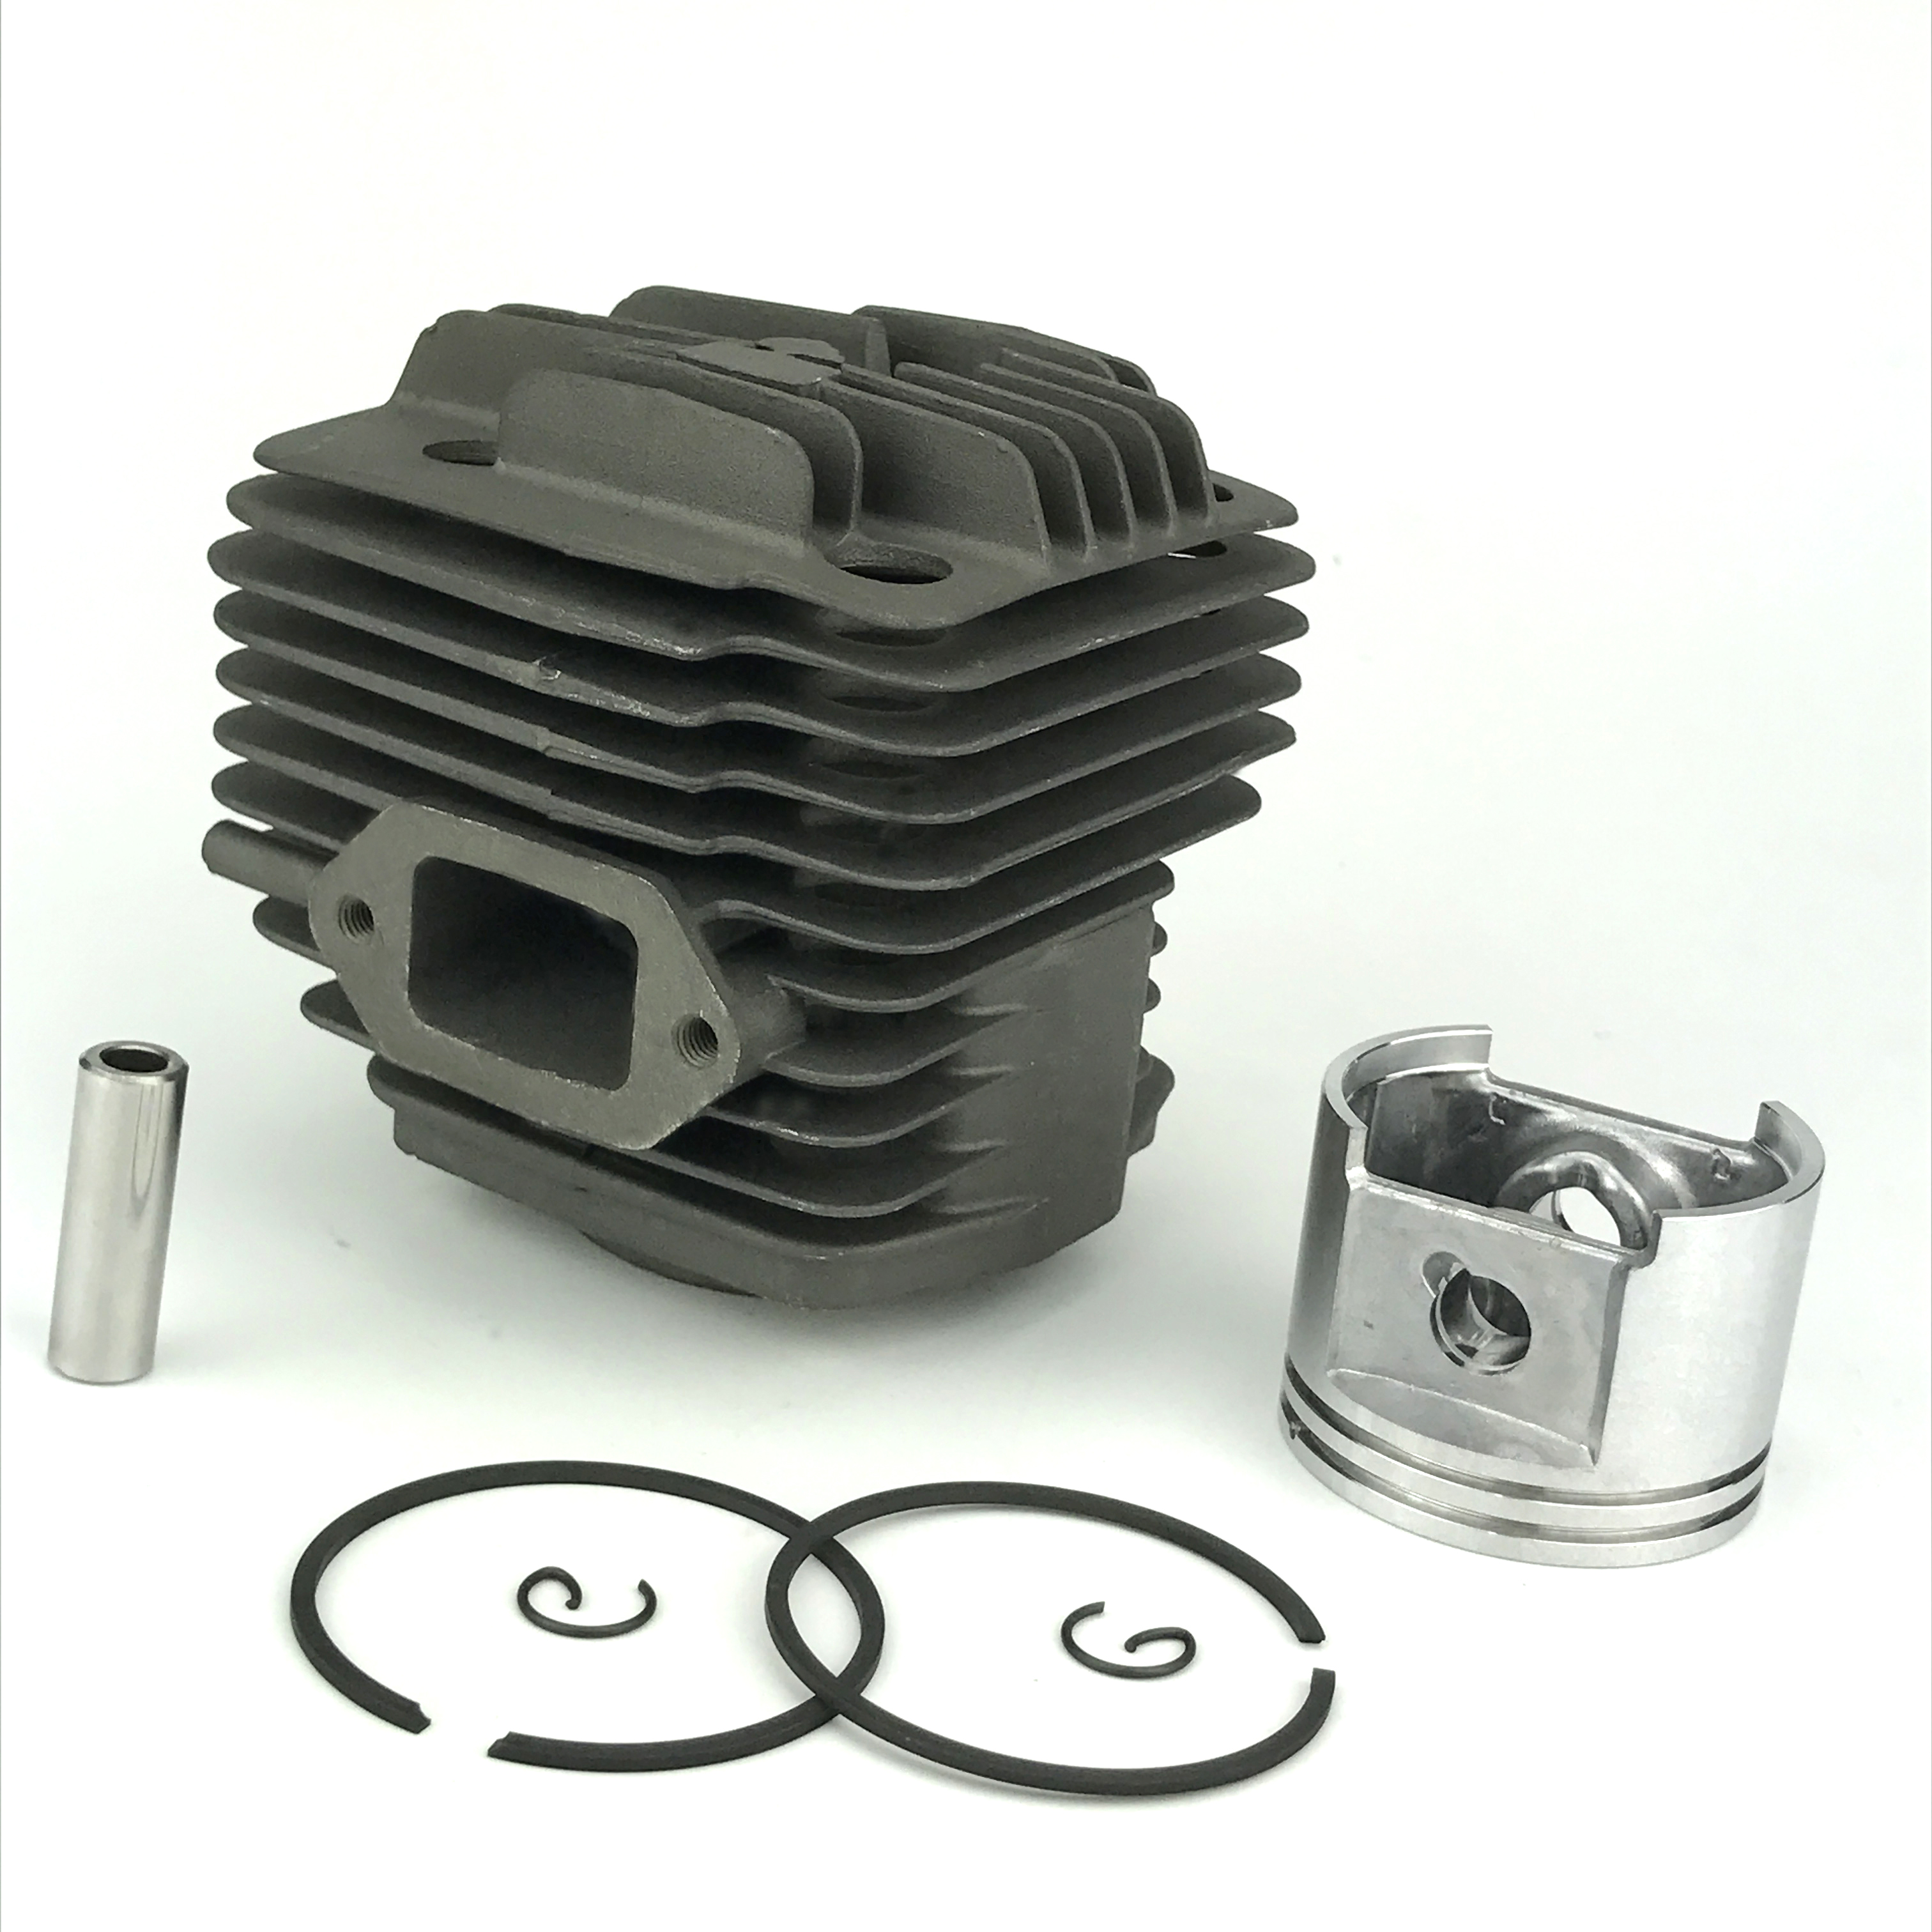 Shroud De Comp Grommet For Decompressor Valve Fits STIHL TS400 4223 084 7400 